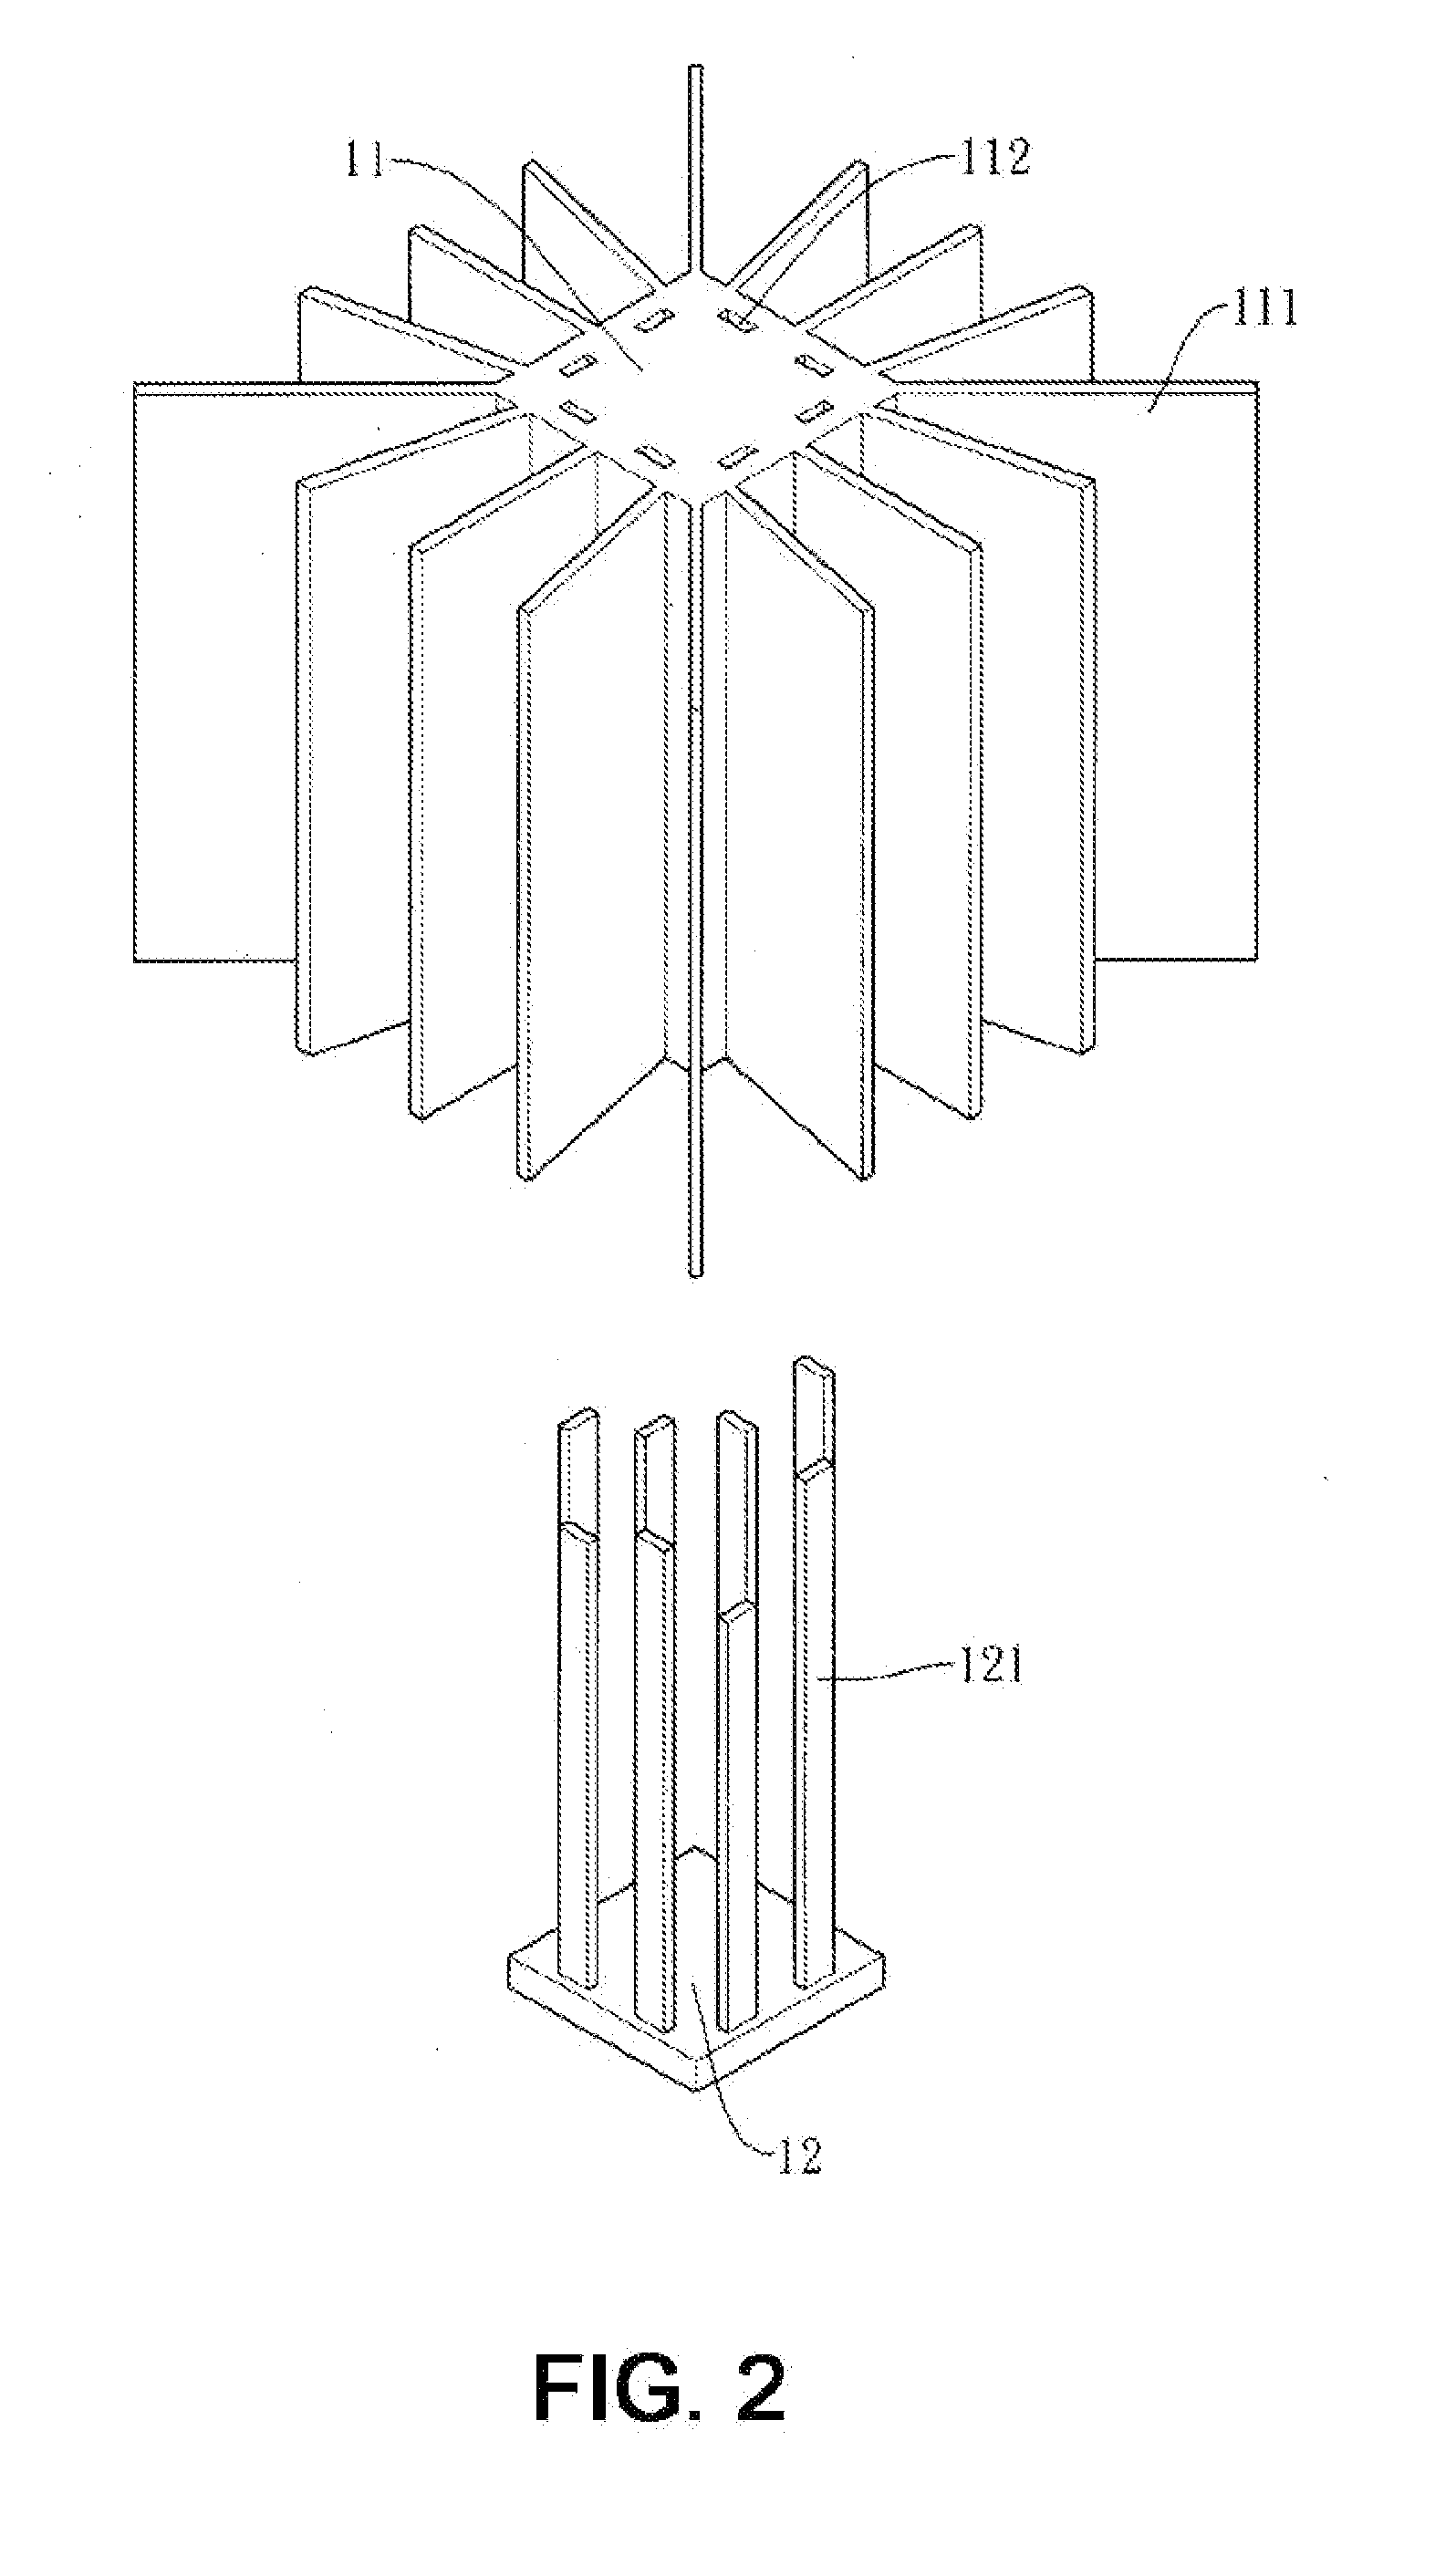 Heat dissipation module